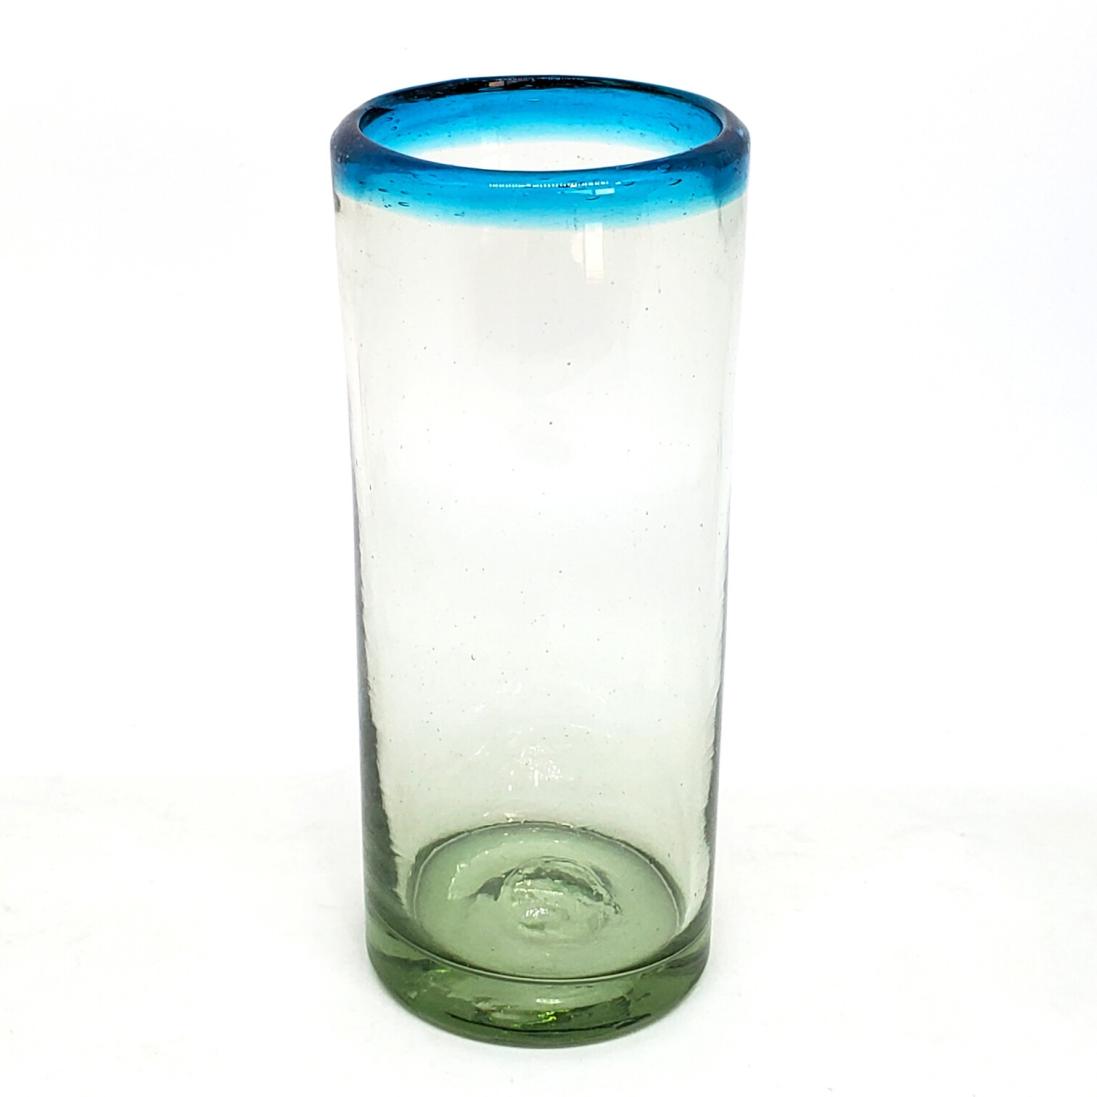 Vasos de Vidrio Soplado / Juego de 6 vasos tipo highball con borde azul aqua / Disfrute de mojitos, cubas o cualquier otra bebida refrescante con stos elegantes vasos tipo highball.